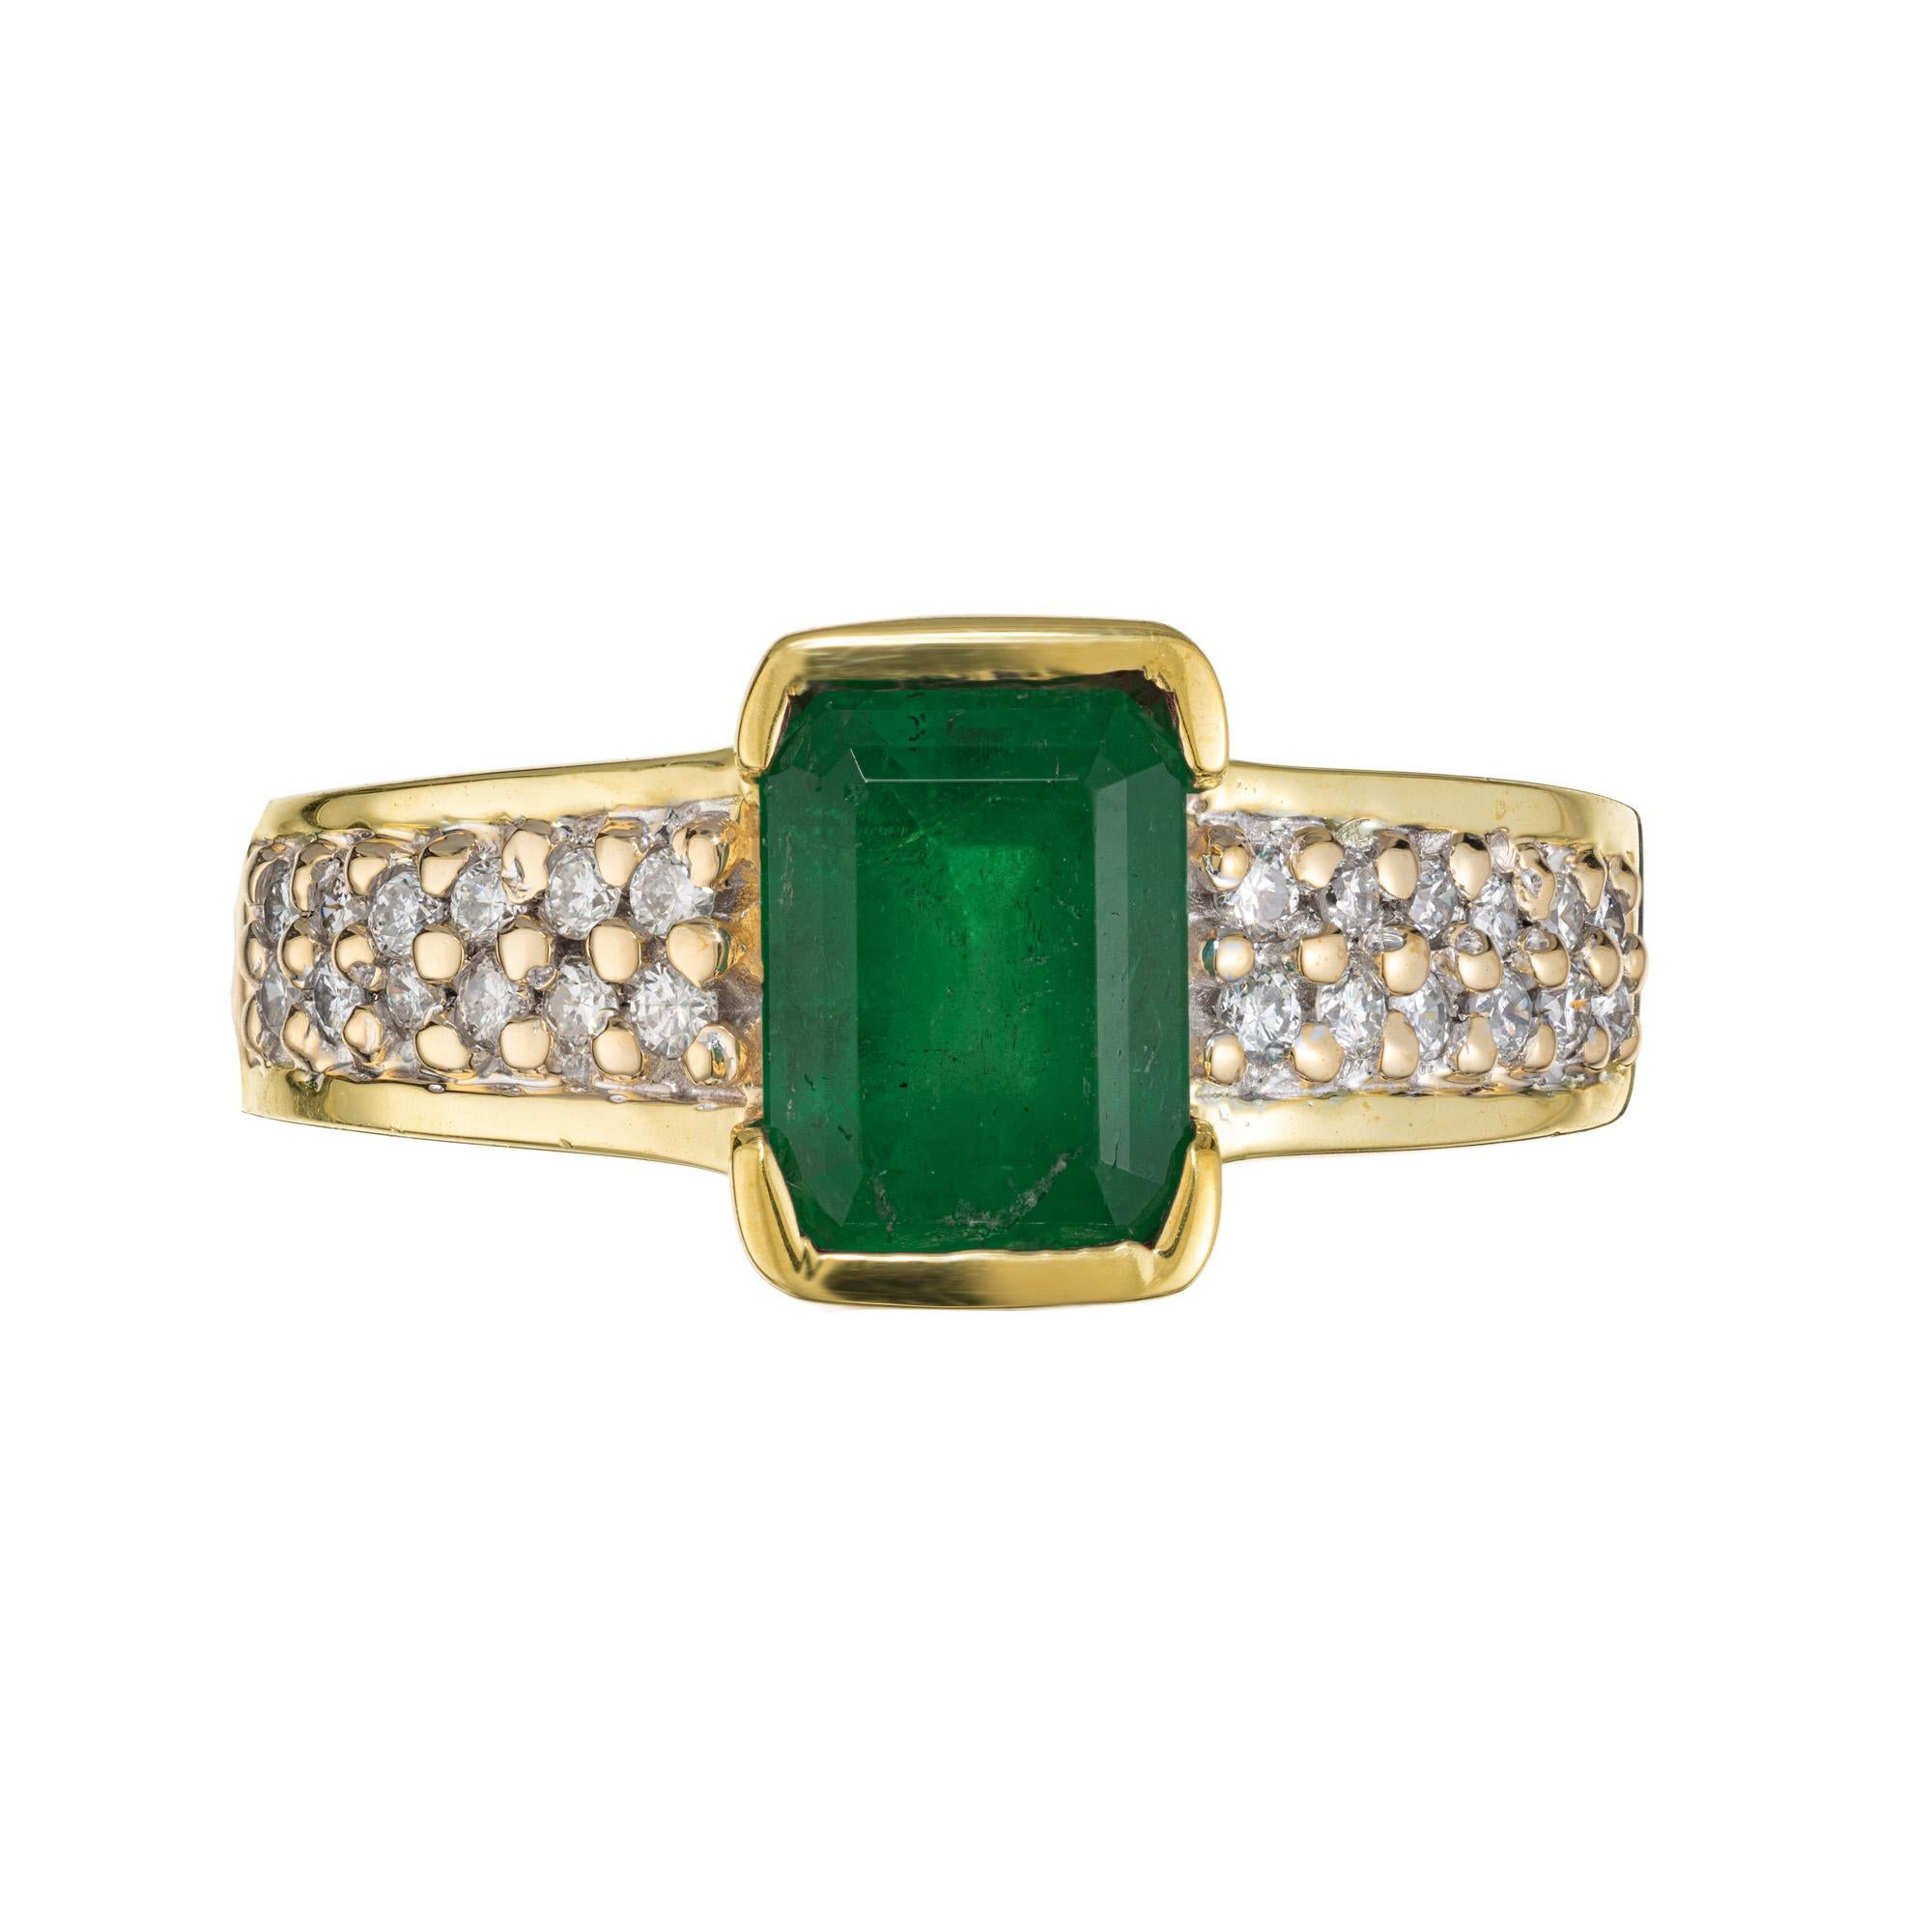 Verlobungsring mit grünem Smaragd und Diamant. GIA-zertifizierte sattgrünen achteckigen Schliff 1,63ct Smaragd, der halb Lünette in einem 14k Gelbgold Einstellung gesetzt ist. Jede Schulter ist mit 2 Reihen runder Diamanten im Brillantschliff